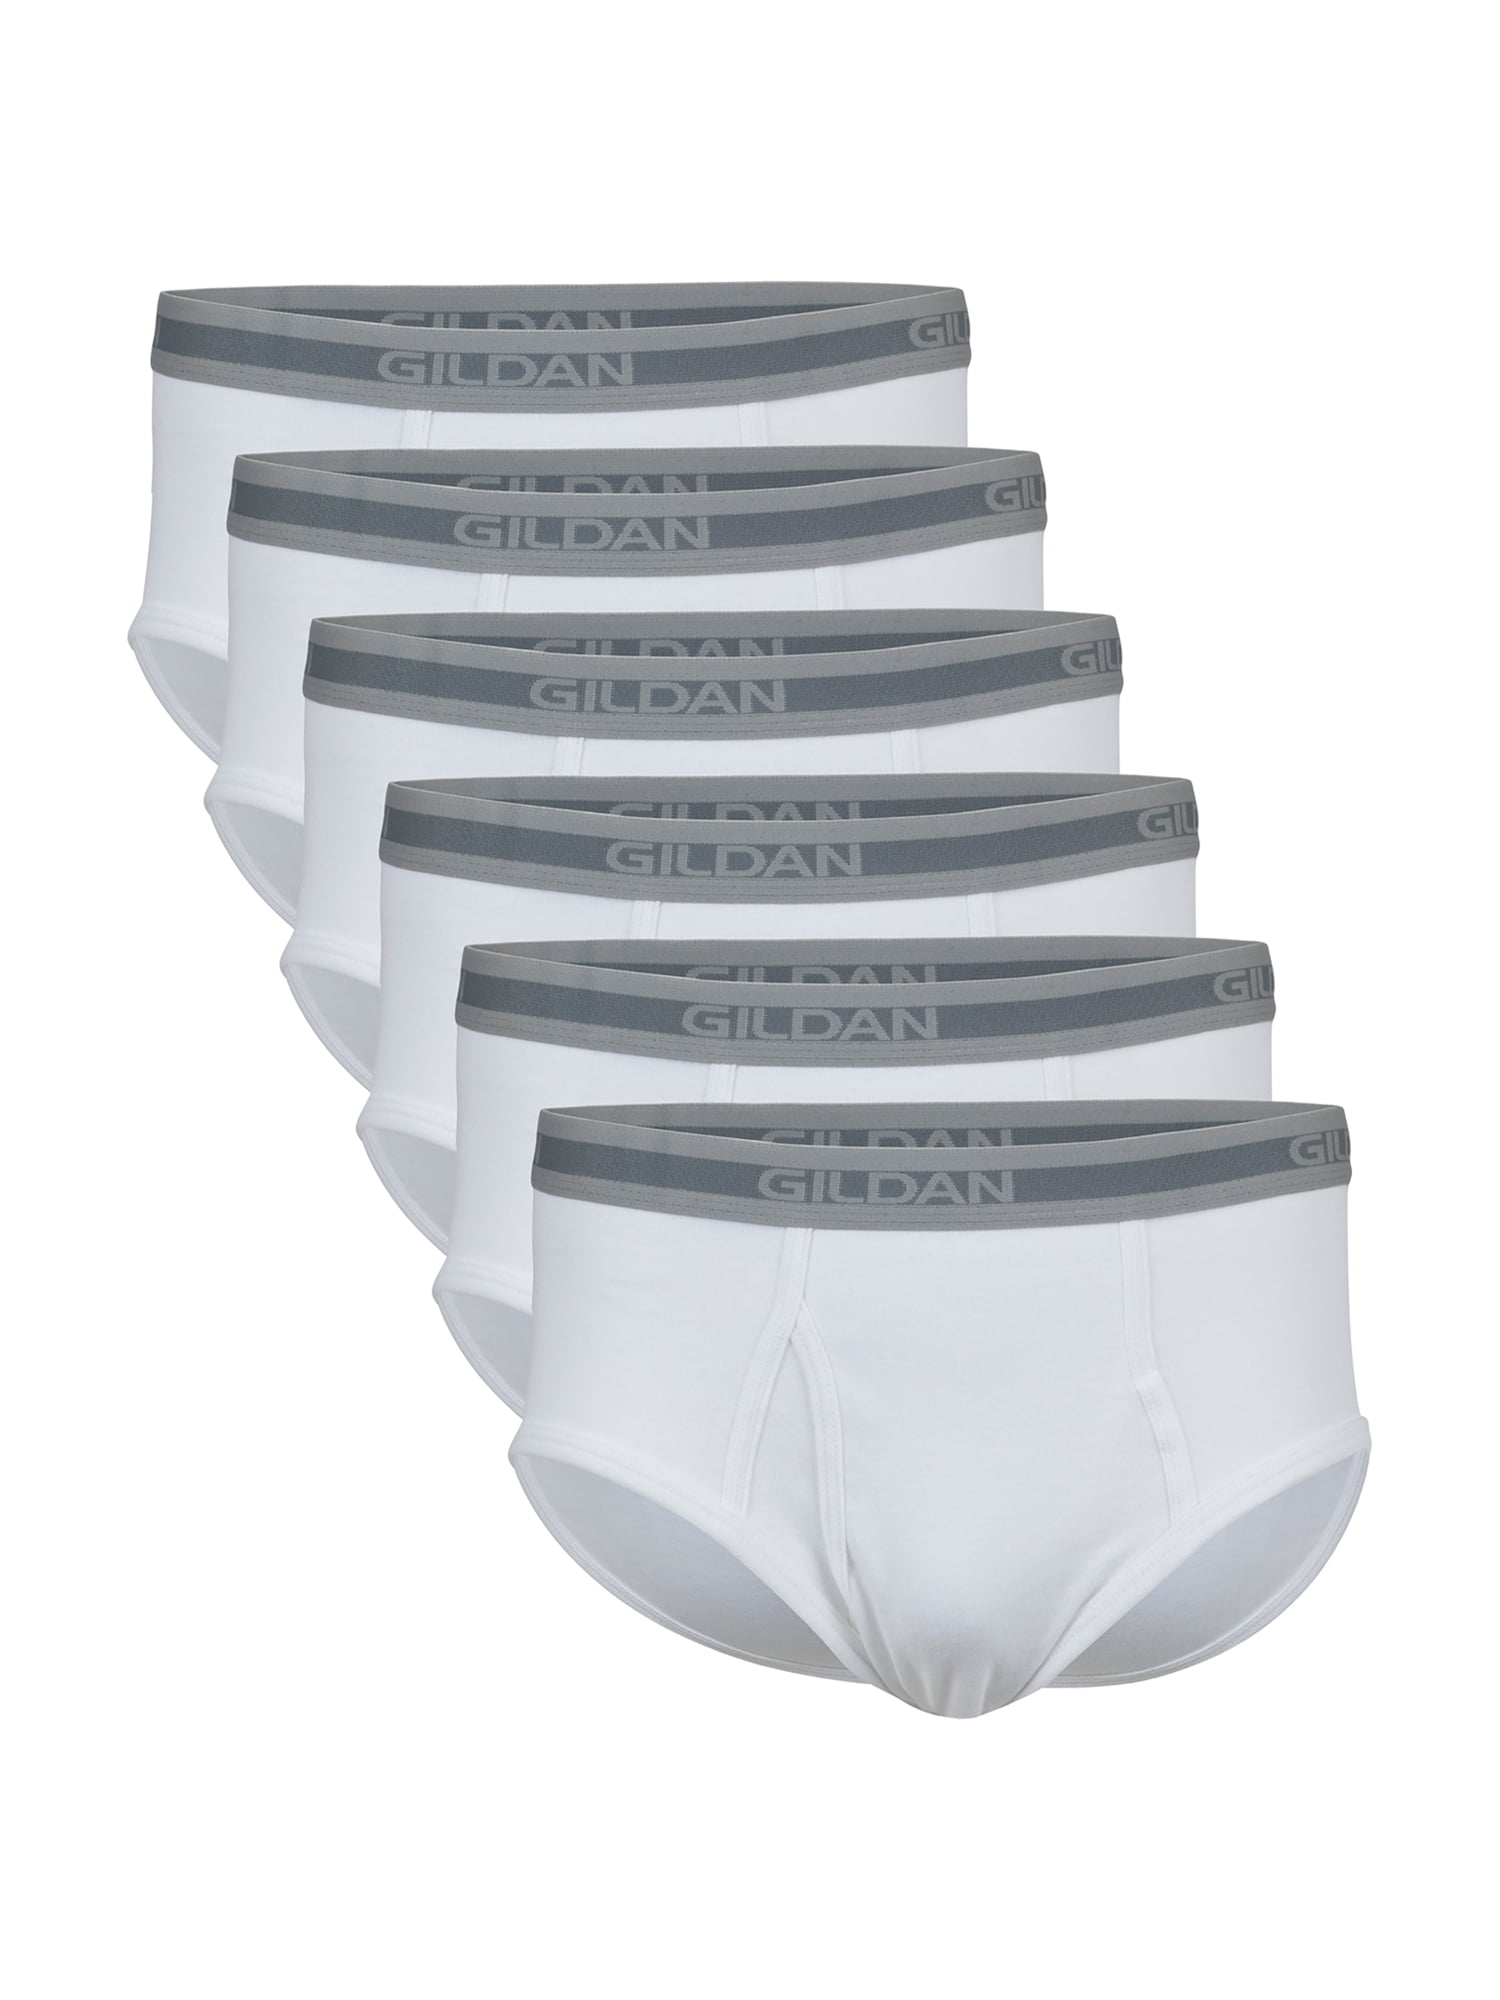 Gildan Adult Men's Premium Cotton Briefs, 6-Pack, Sizes S-2XL